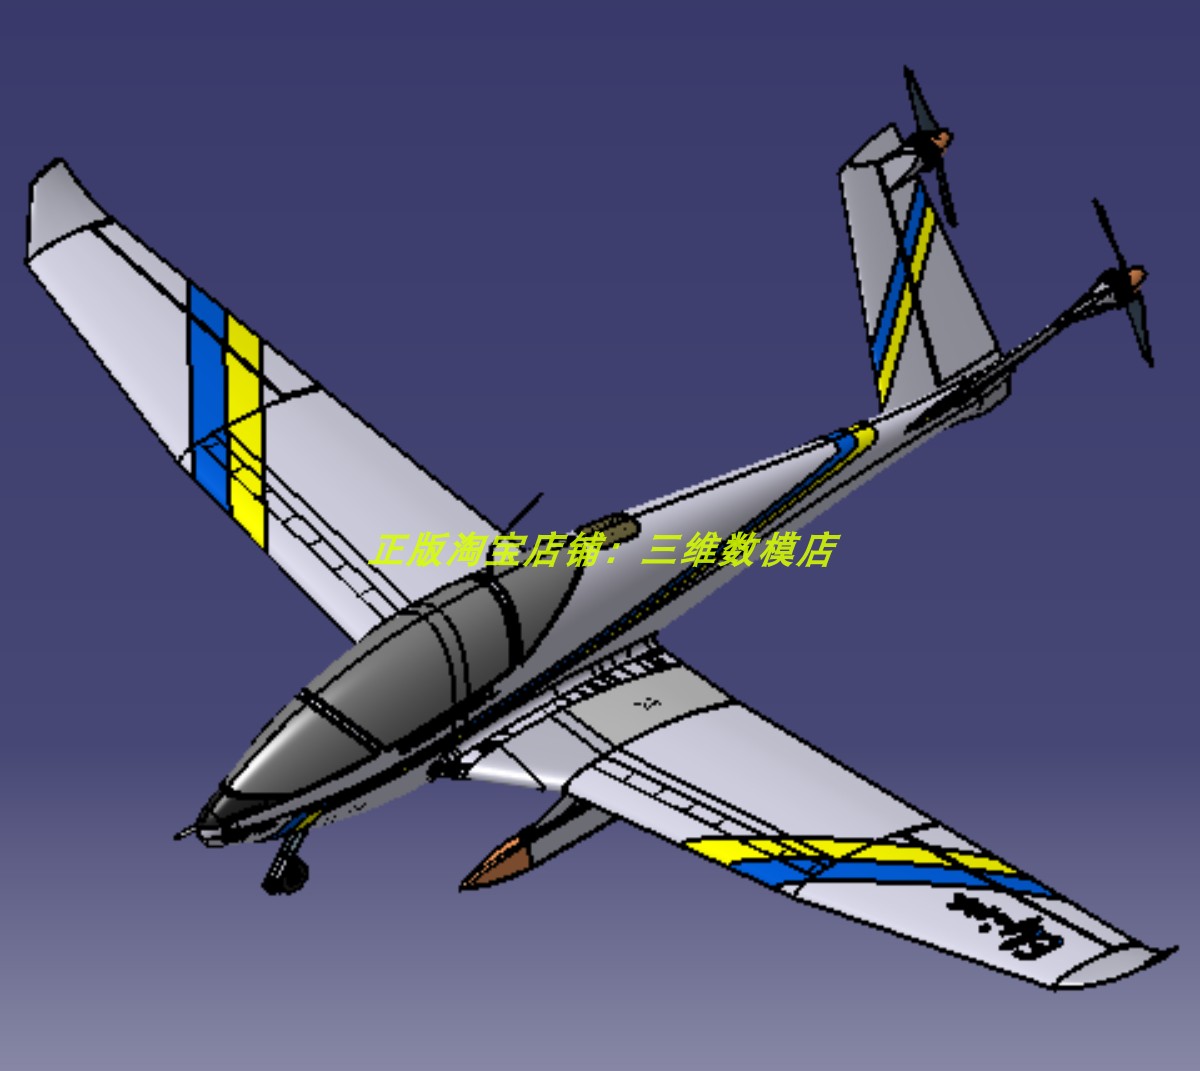 6米空客单座椅子电动飞机舱驾驶室仪表台3D三维几何数模型V型尾翼